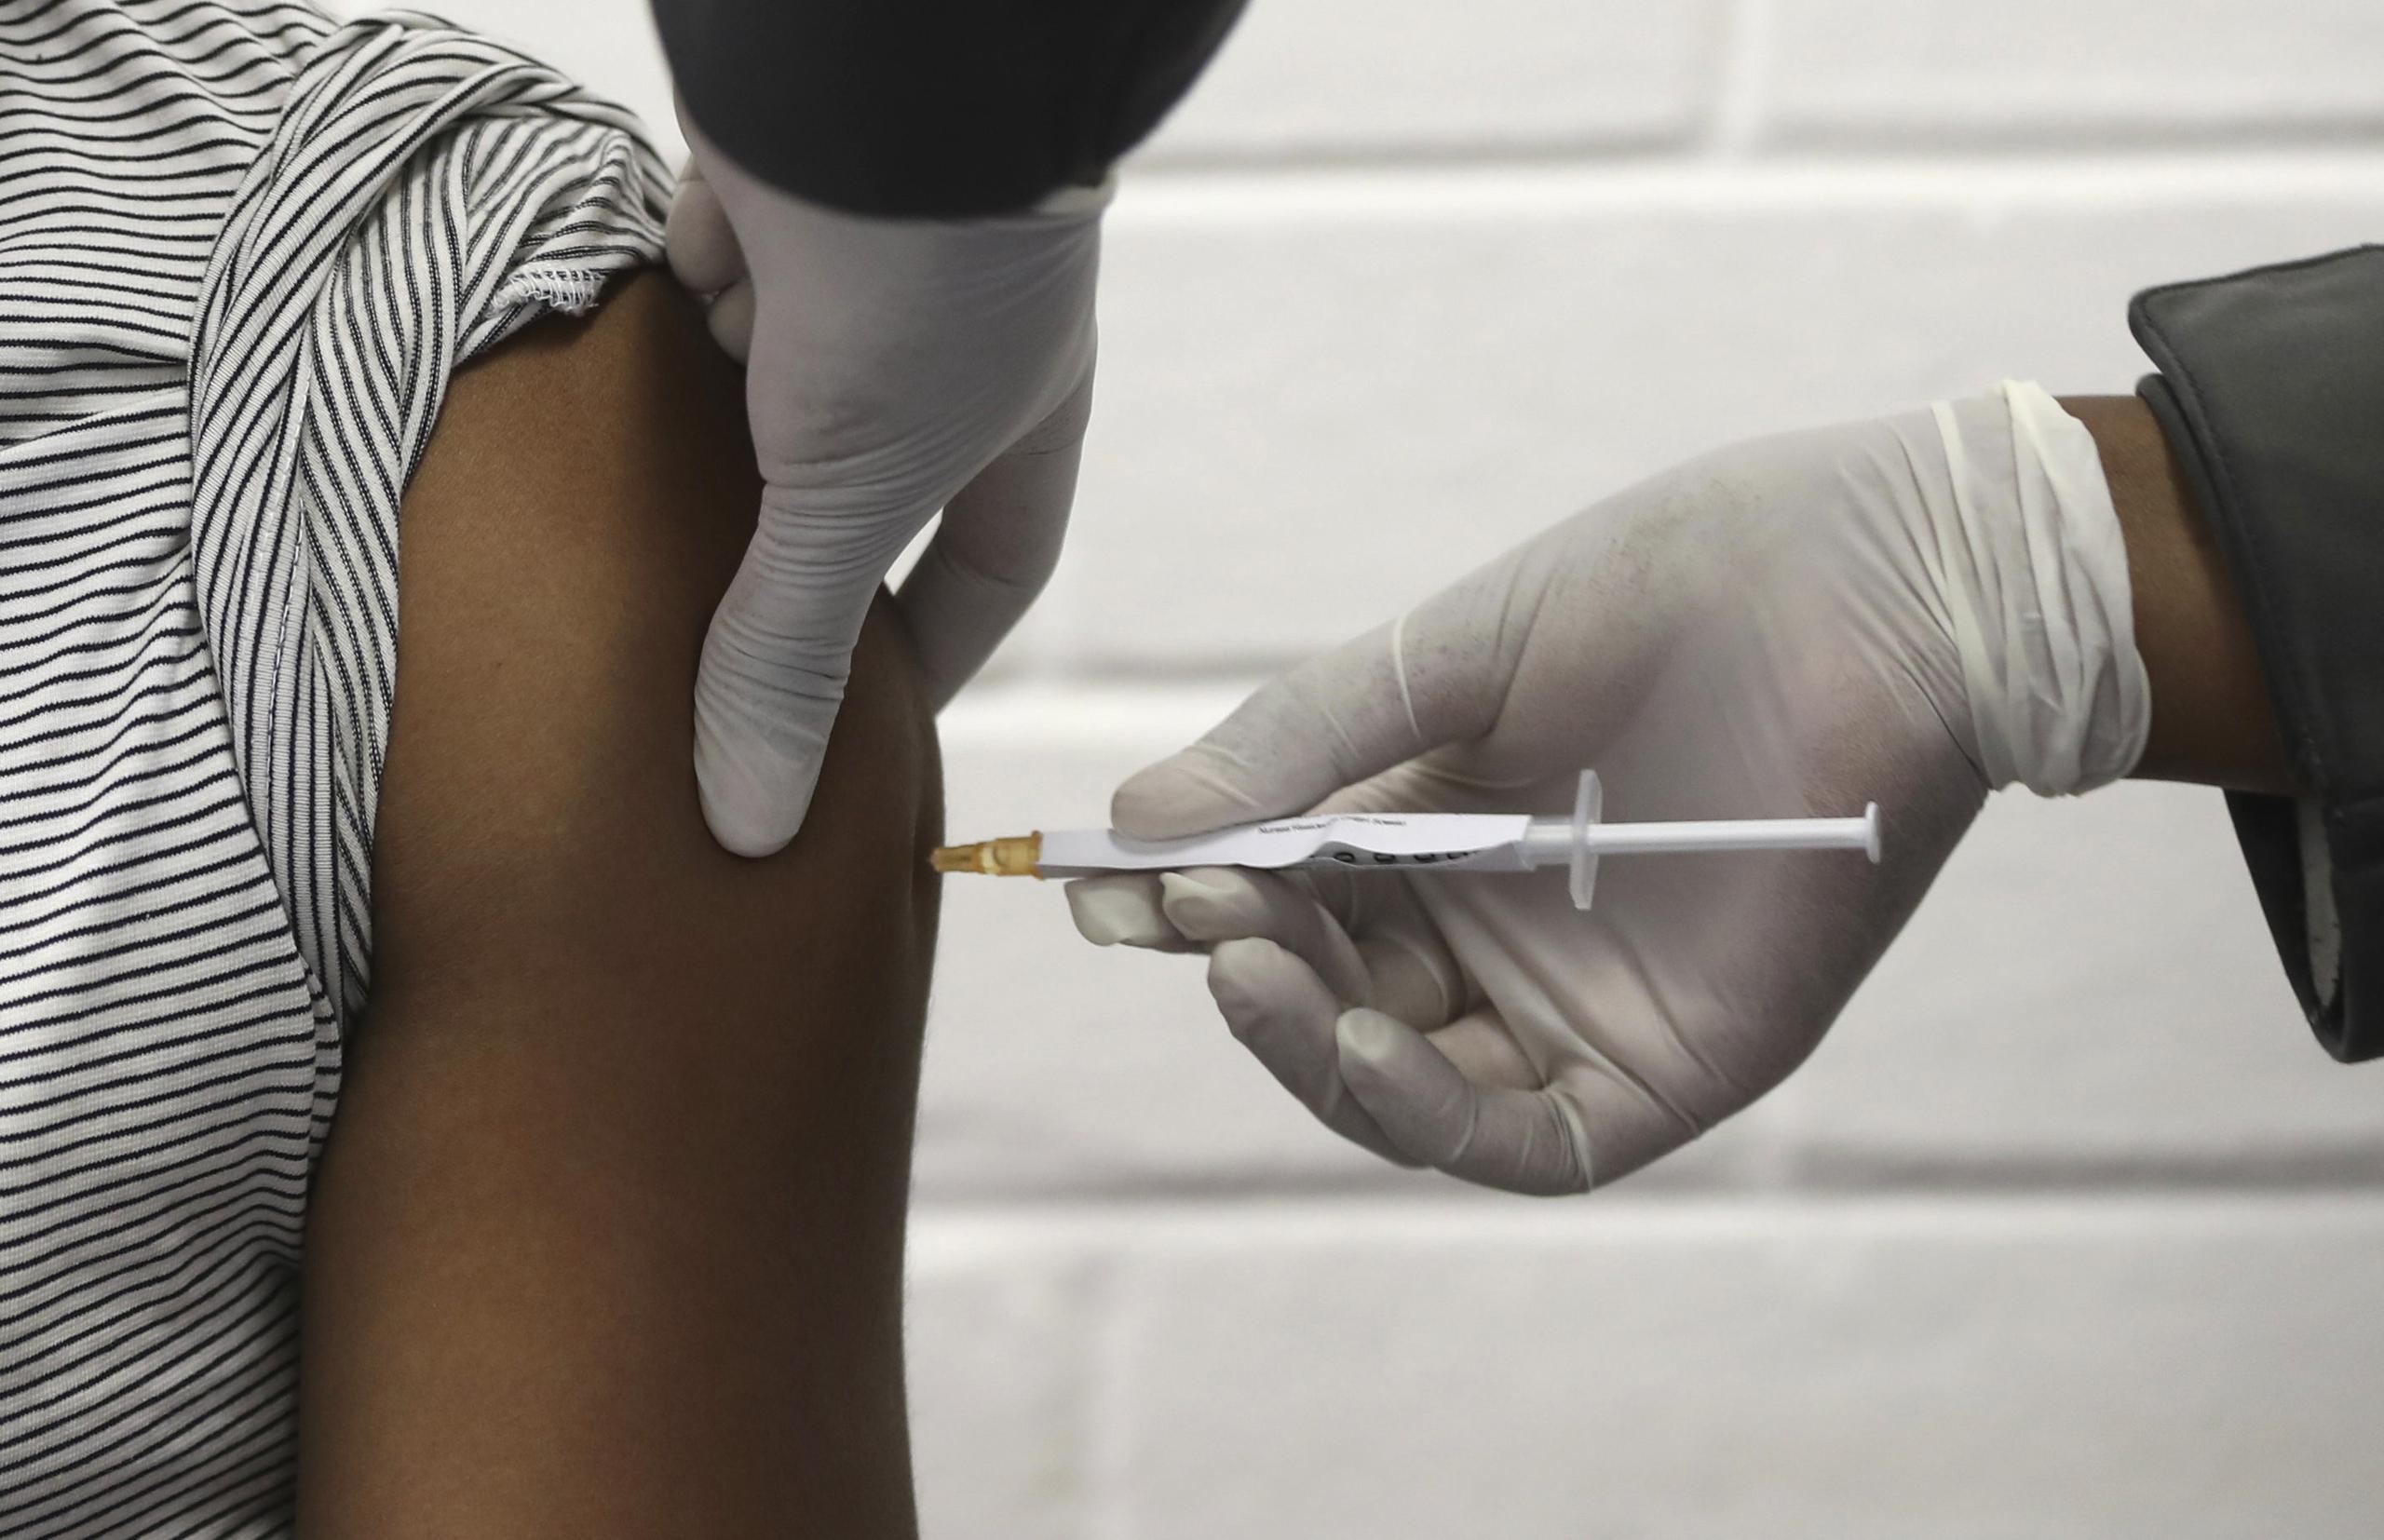 El epidemiólogo alertó de que una posible vacuna no eliminaría las normas de restricción y seguridad que se aplican hoy en todos los países para evitar la transmisión del virus.